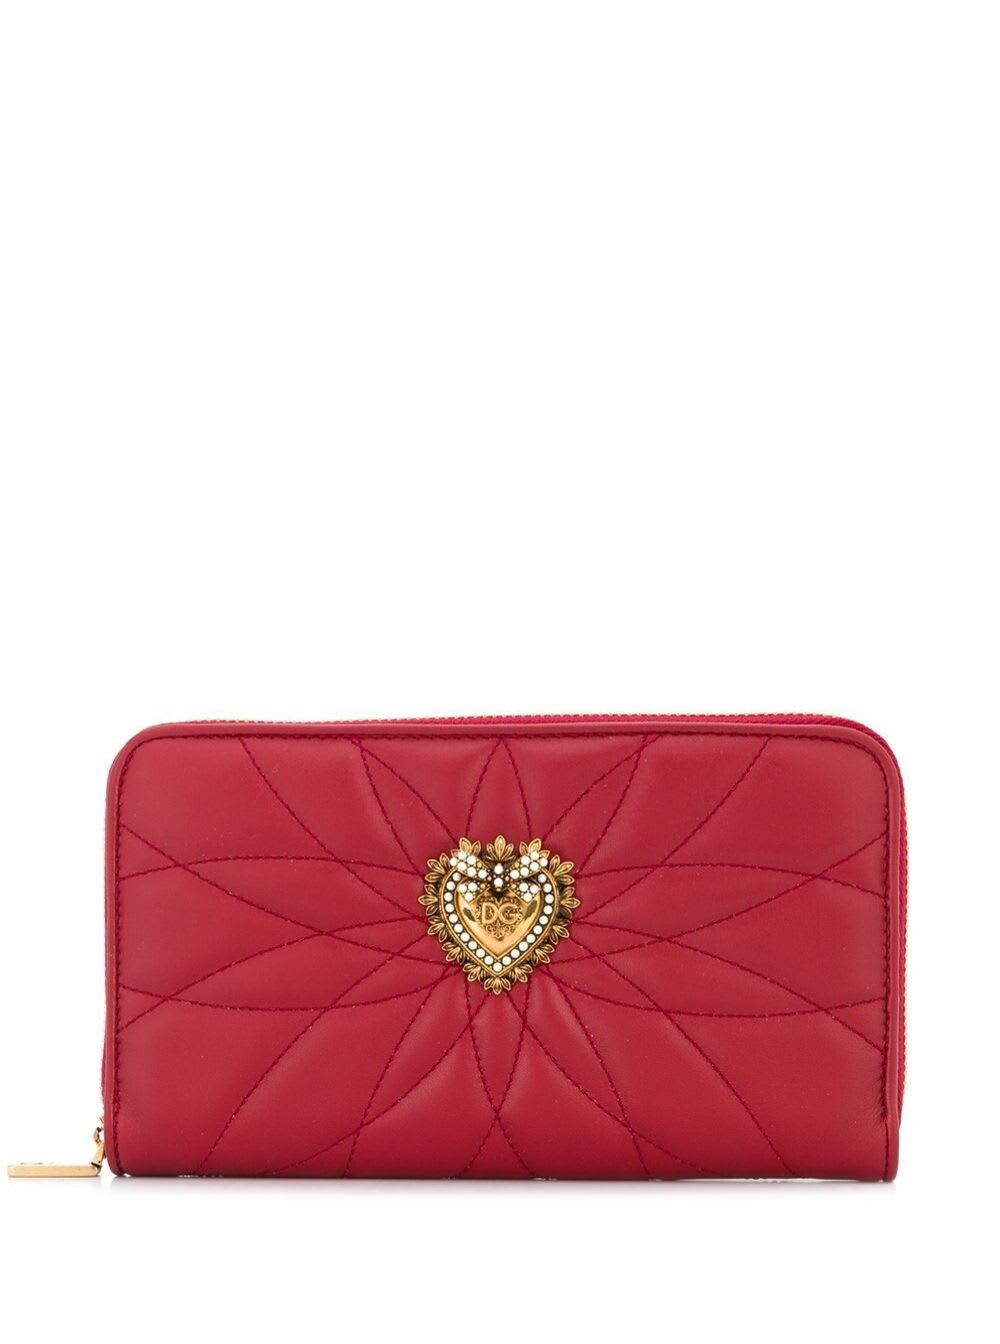 Dolce & Gabbana Devotion Ziparound Wallet